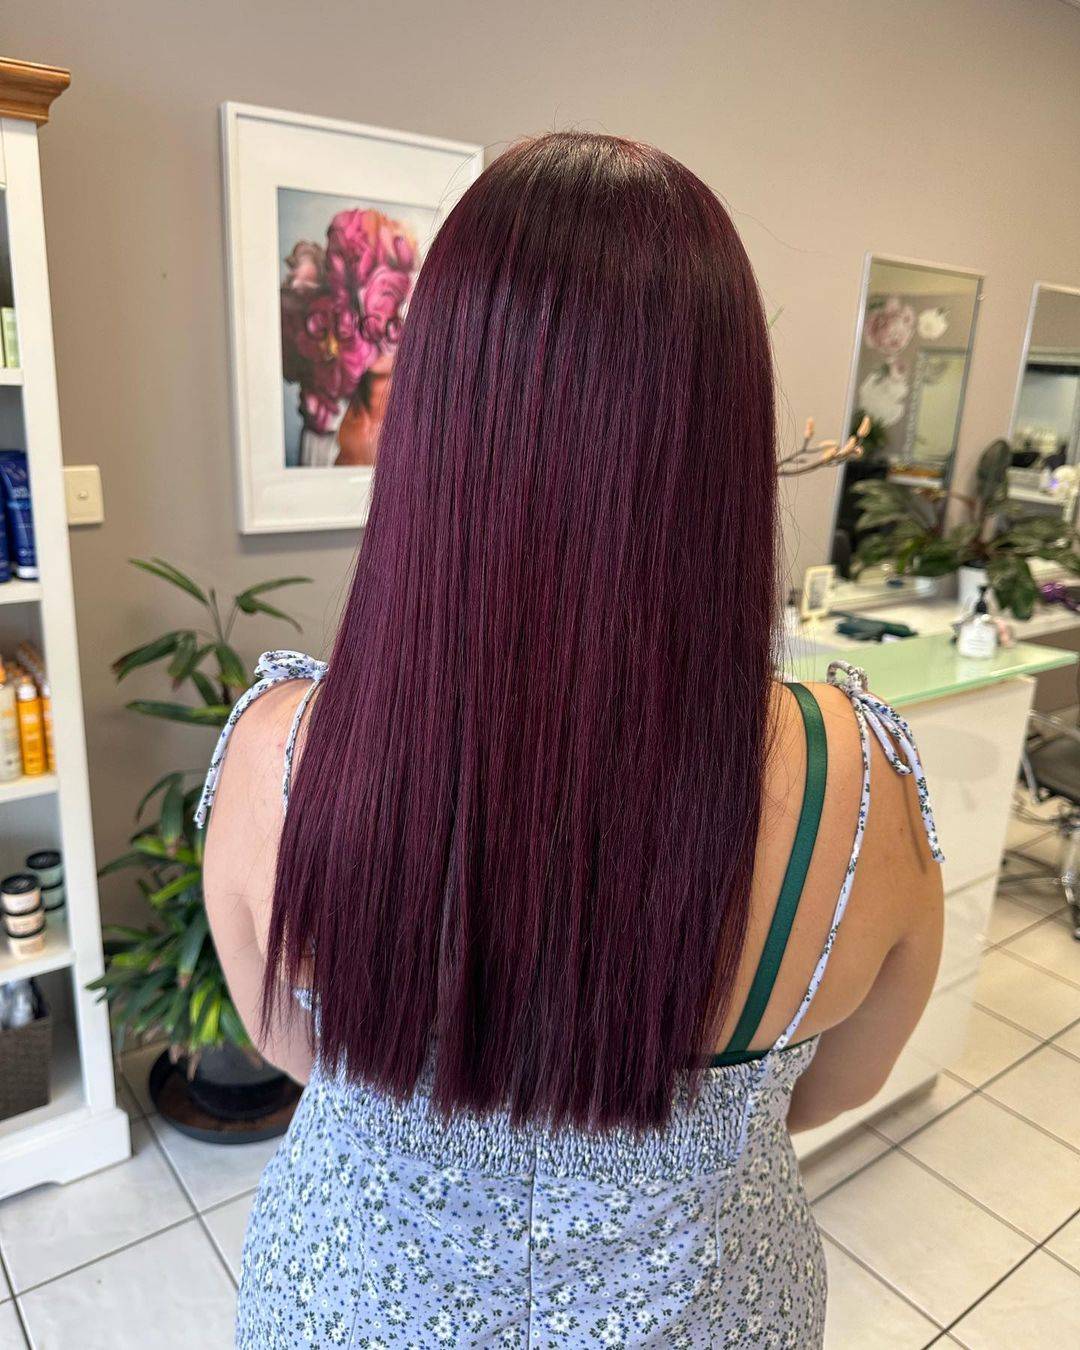 Burgundy hair color 249 burgundy hair color | burgundy hair color for women | burgundy hair color highlights Burgundy Hair Color